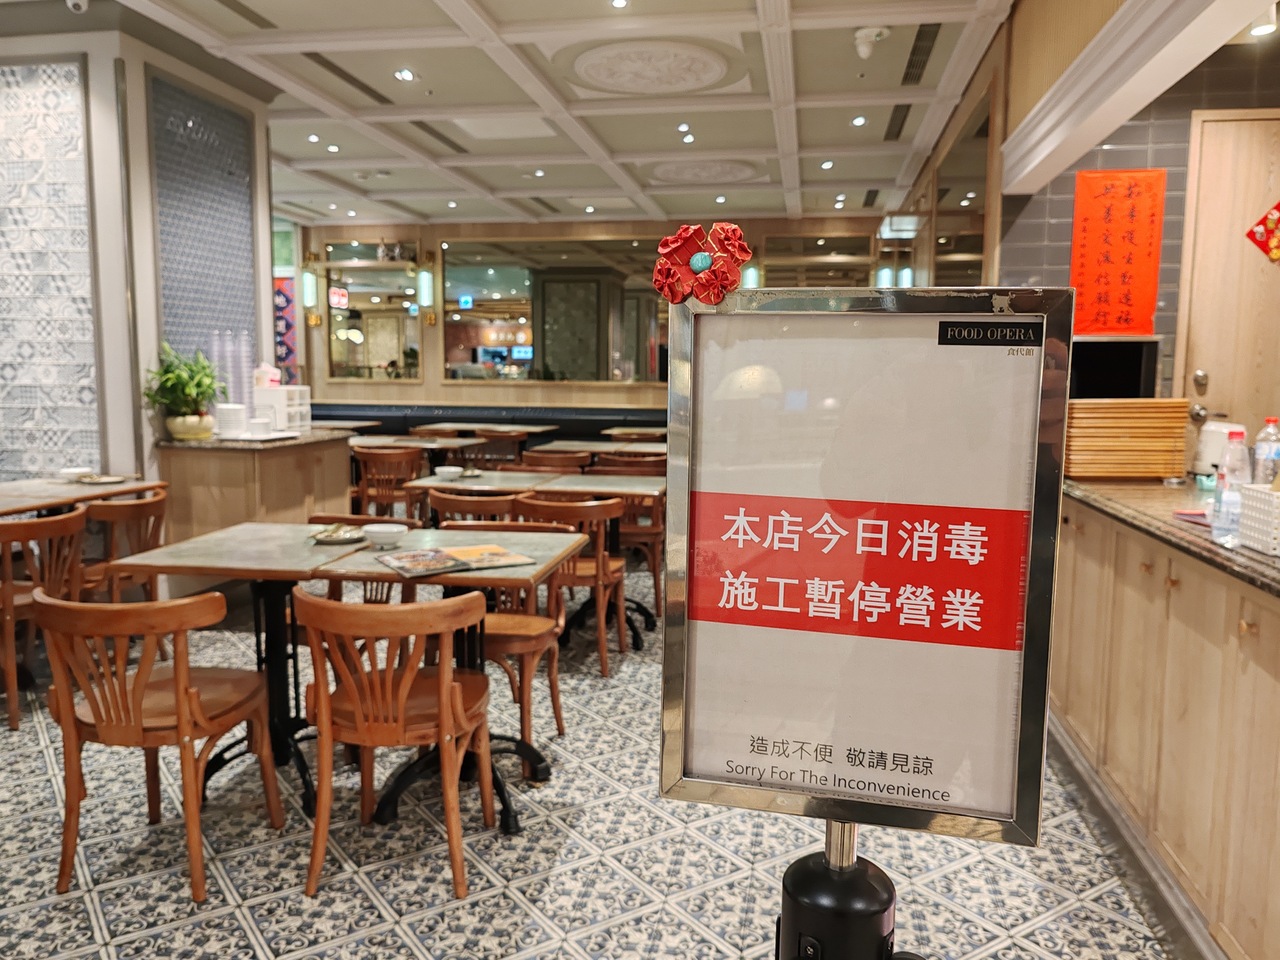 台北市信义区的素食餐厅宝林茶室。